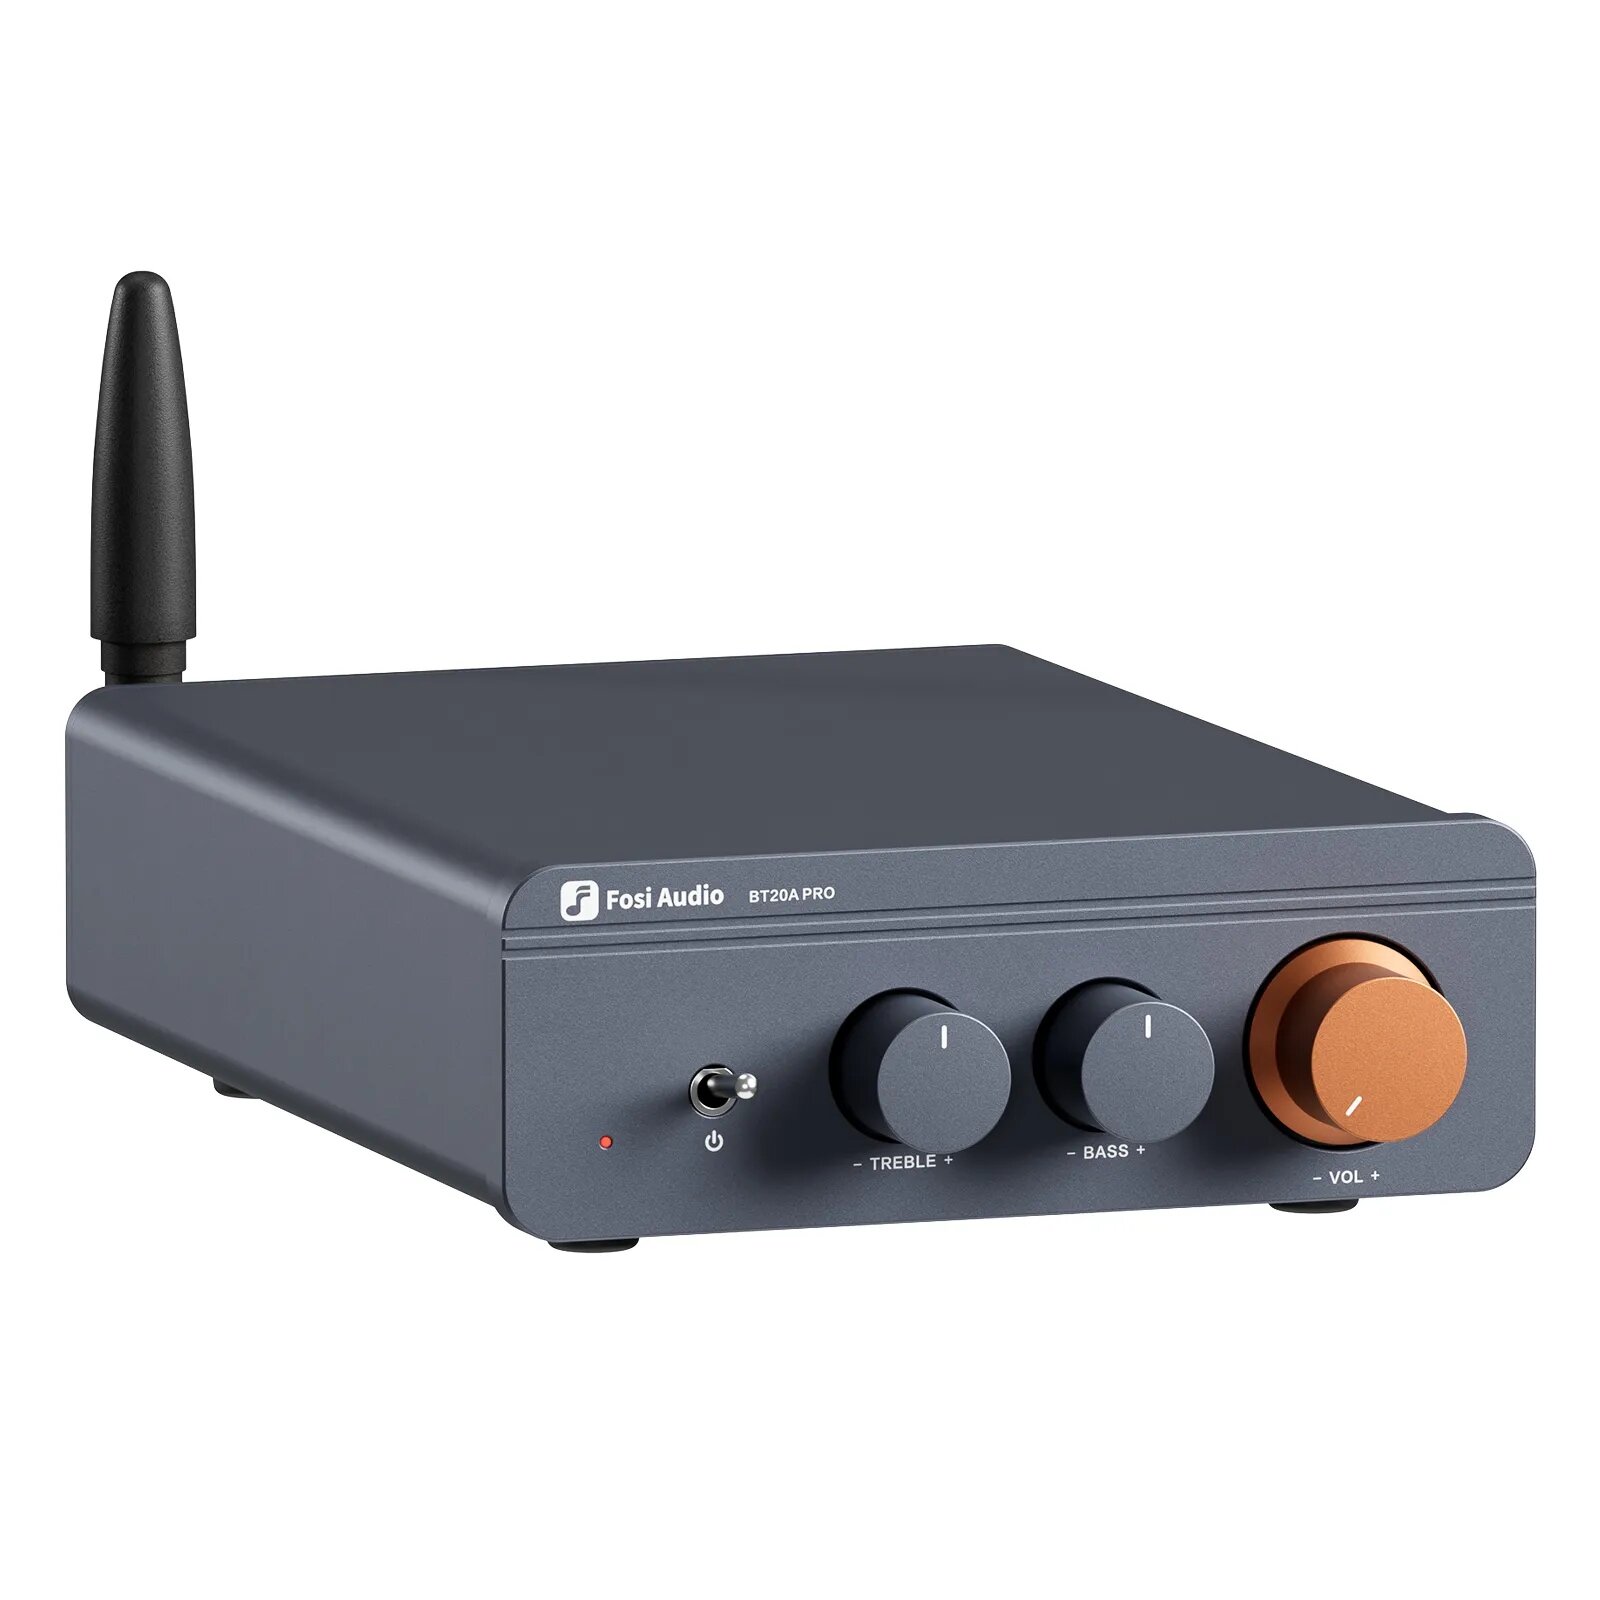 Усилитель для колонок Fosi Audio BT20A Pro 300 Вт с блоком питания 48В/5А